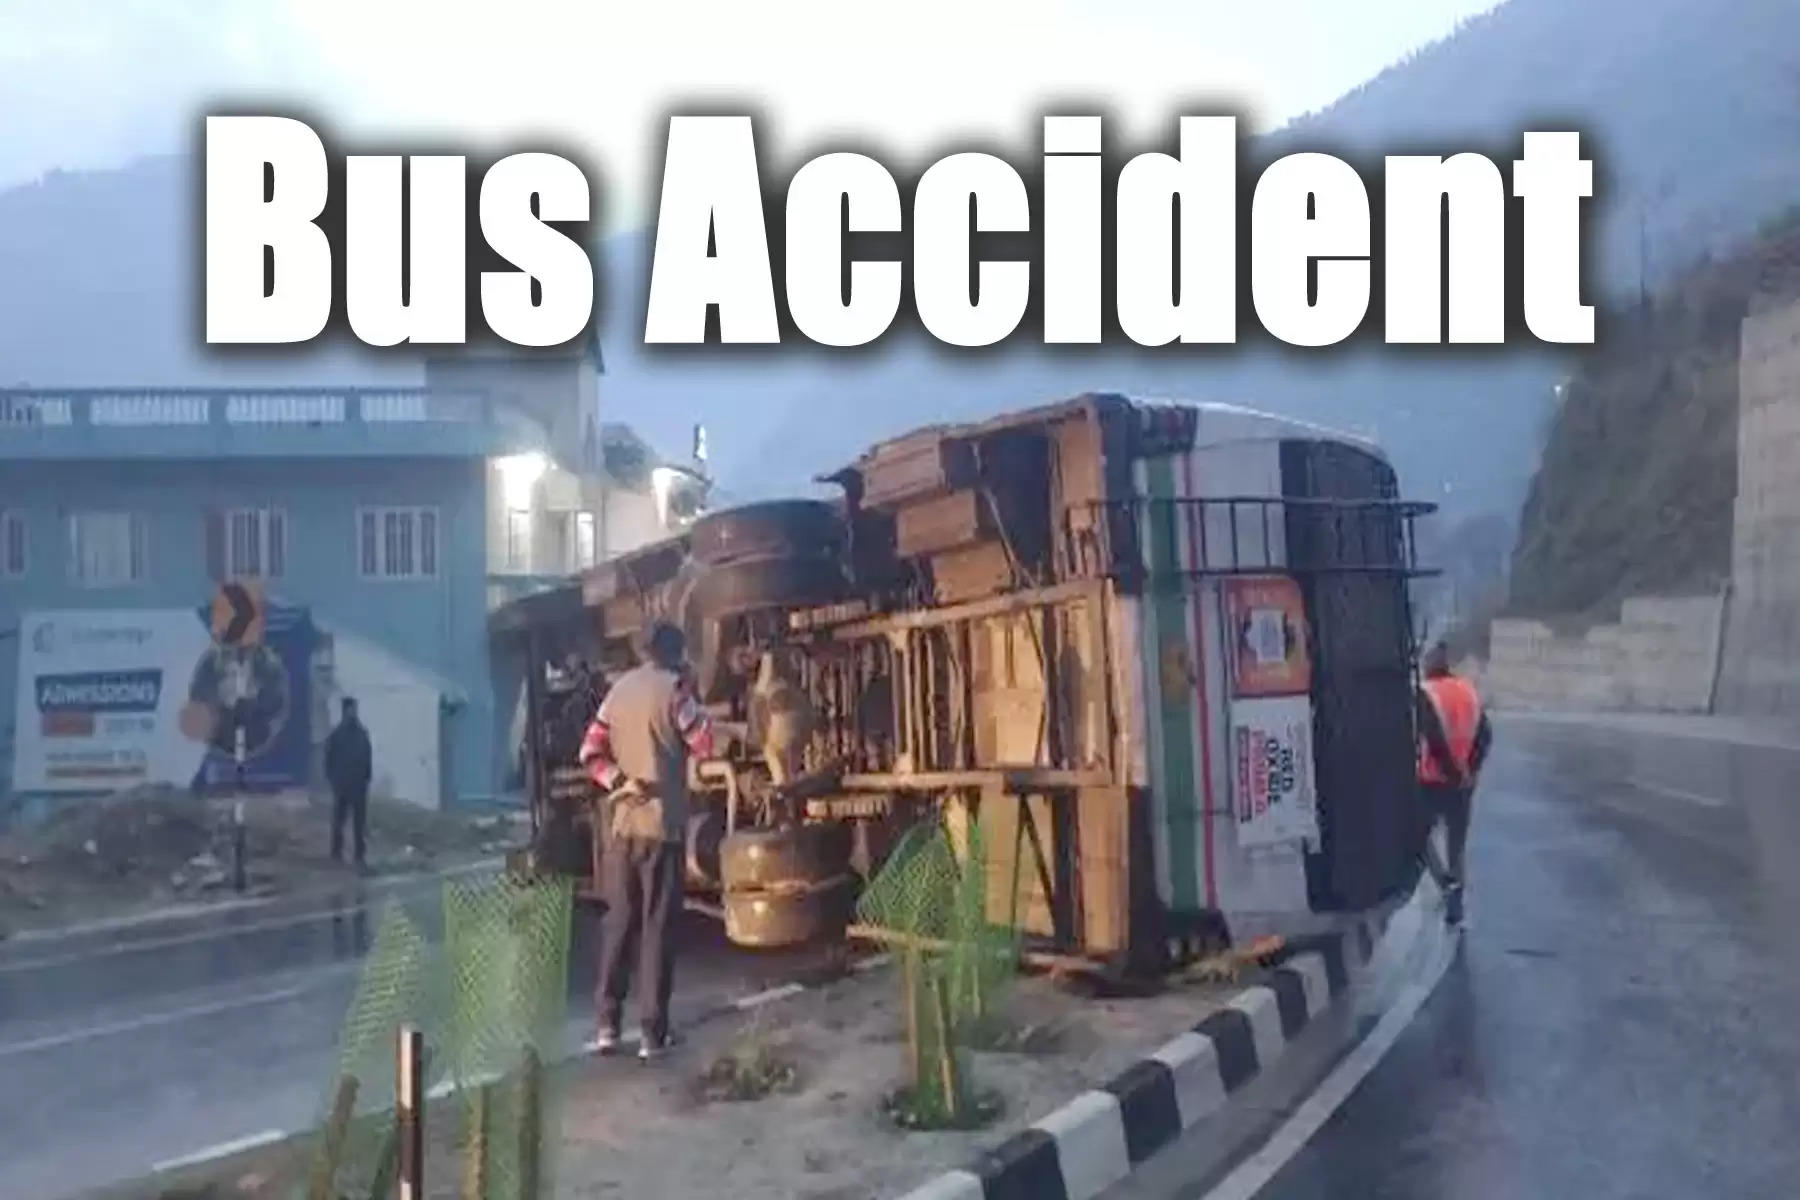 हिमाचल प्रदेश में बुधवार सुबह-सुबह हुए एक बड़े बस हादसे में 14 लोग घायल हो गए। हादसा कुल्लू-मंडी राष्ट्रीय राजमार्ग पर नगवाईं के पास हुआ है। यहां हिमाचल पथ परिवहन निगम की एक बस बीच सड़क में पलट गई है। हादसे में 14 यात्री घायल हुए हैं, जिन्हें स्थानीय अस्पताल में भर्ती करवाया गया है।